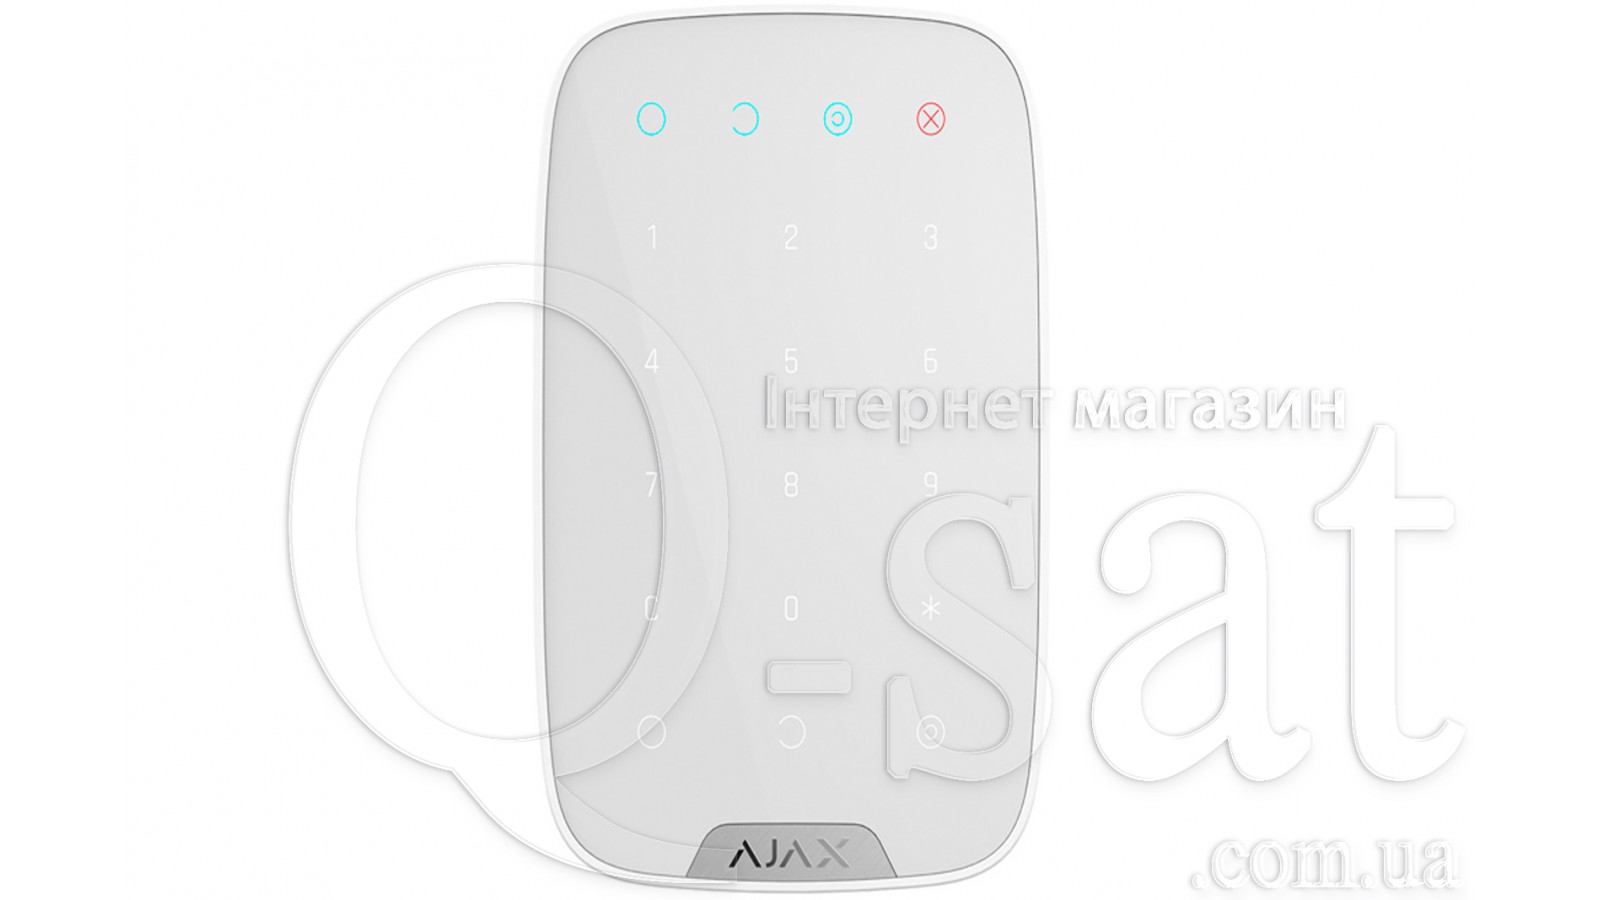 AJAX KeyPad (біла)